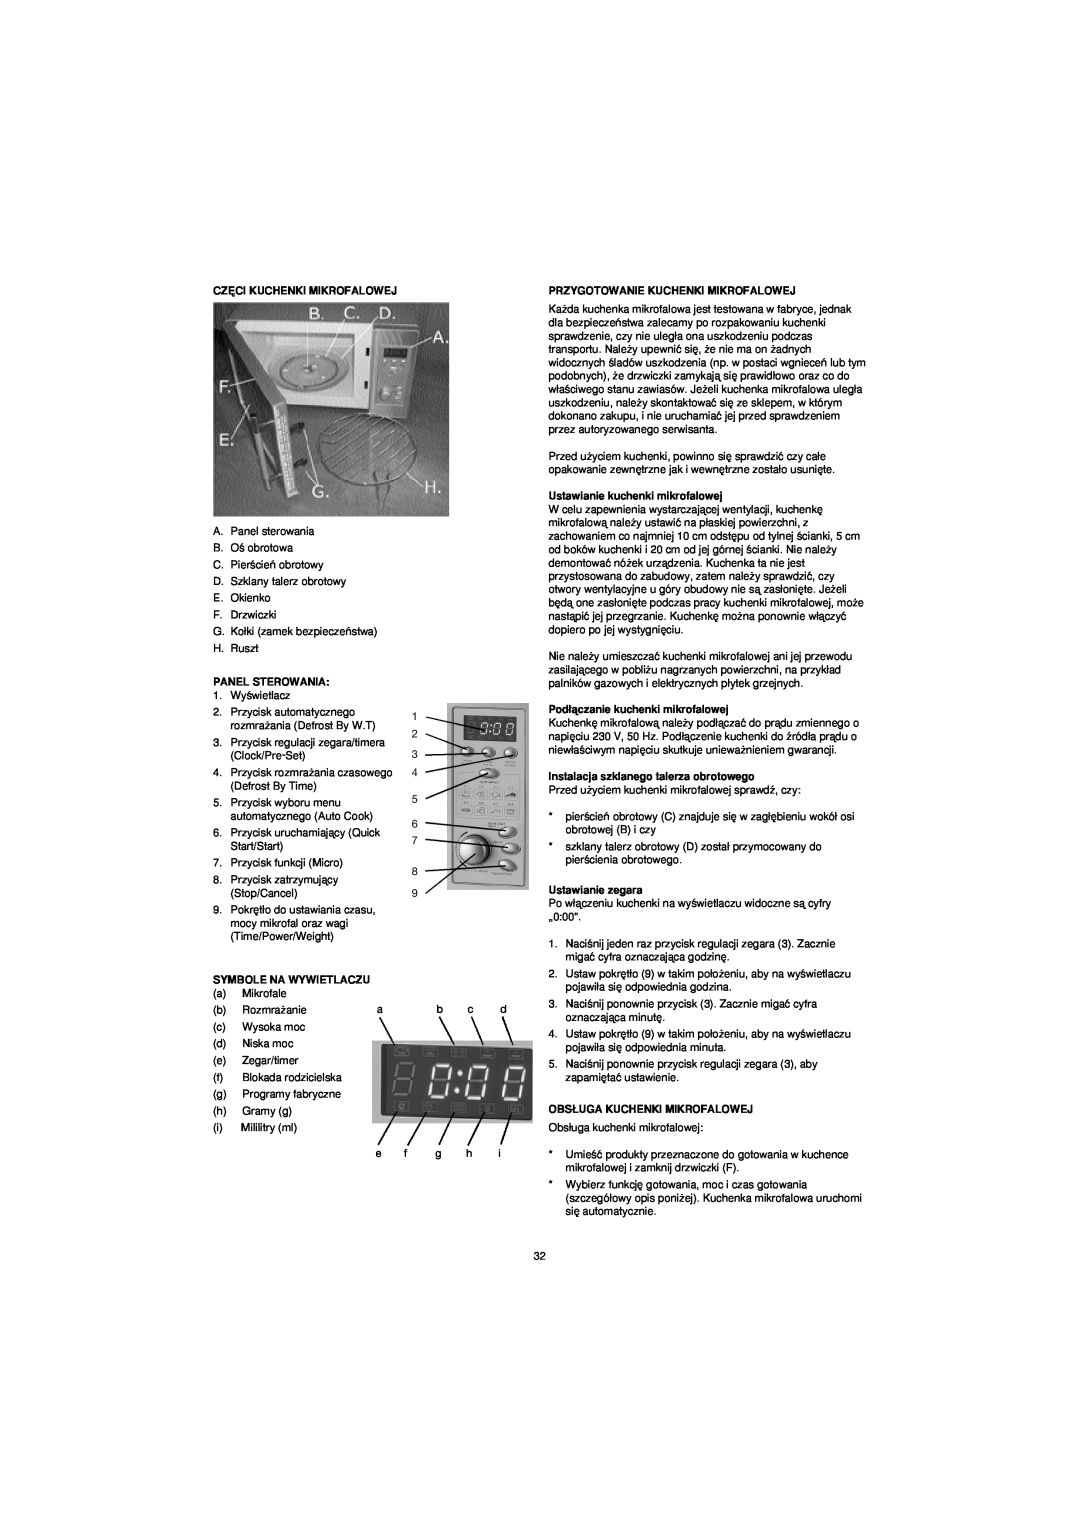 Melissa 753-094 Cz¢Ci Kuchenki Mikrofalowej, Panel Sterowania, Symbole Na Wywietlaczu, Przygotowanie Kuchenki Mikrofalowej 